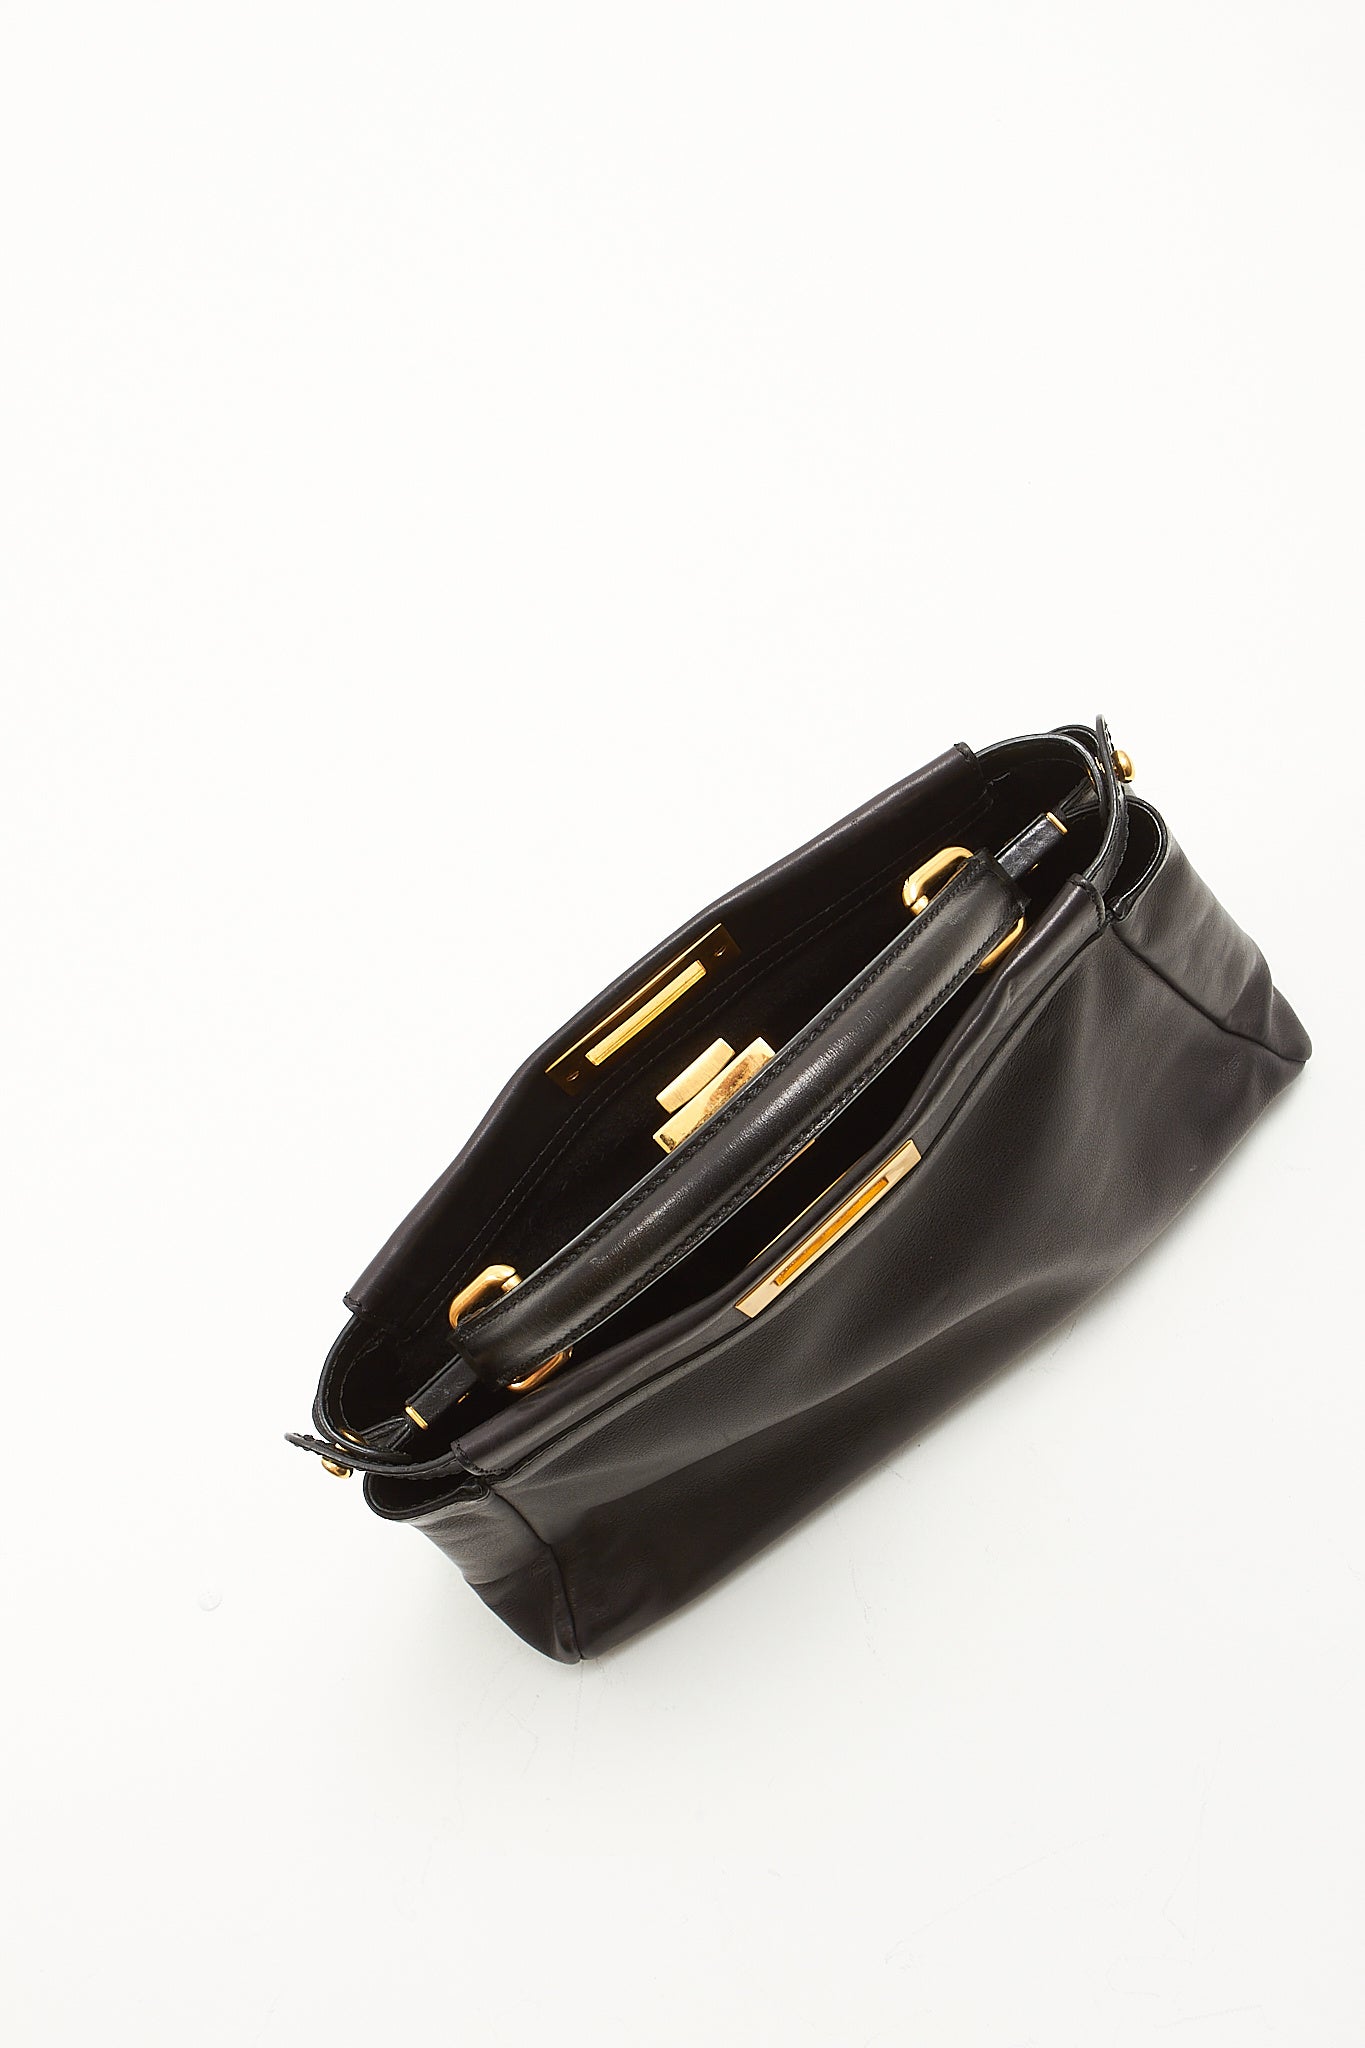 Fendi Black Leather Medium Peekaboo Bag